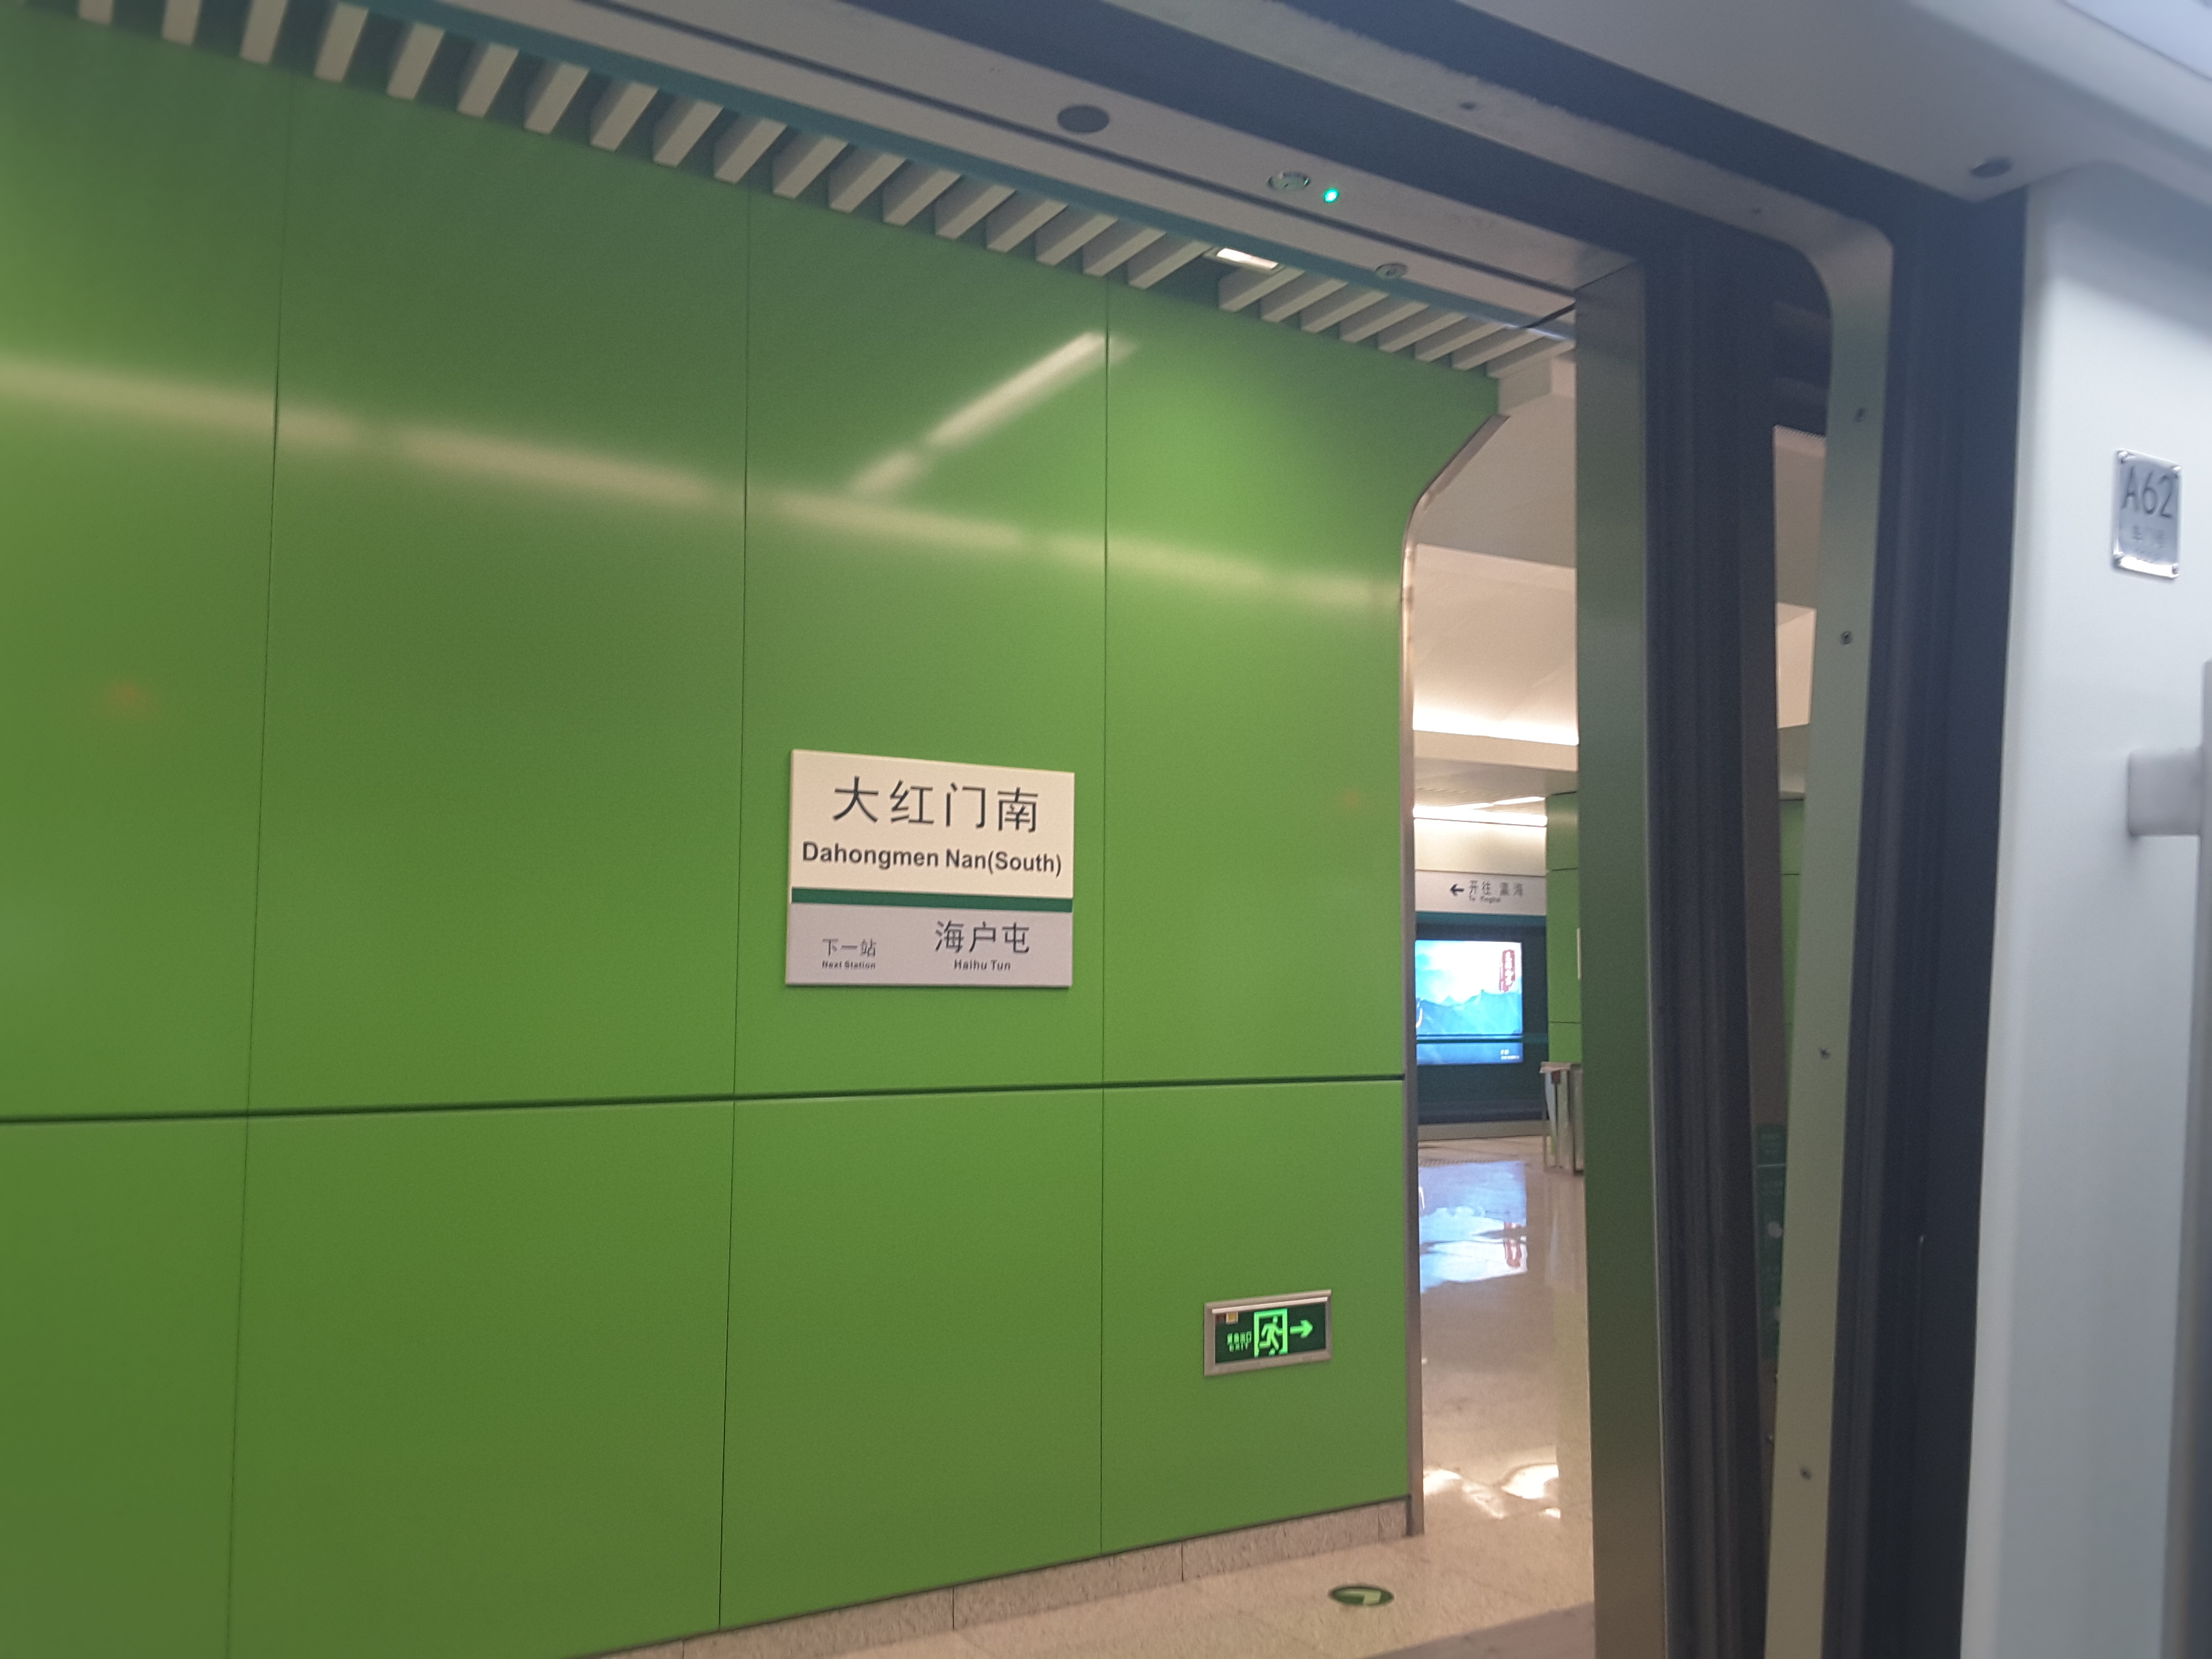 北京地铁10号线大红门图片